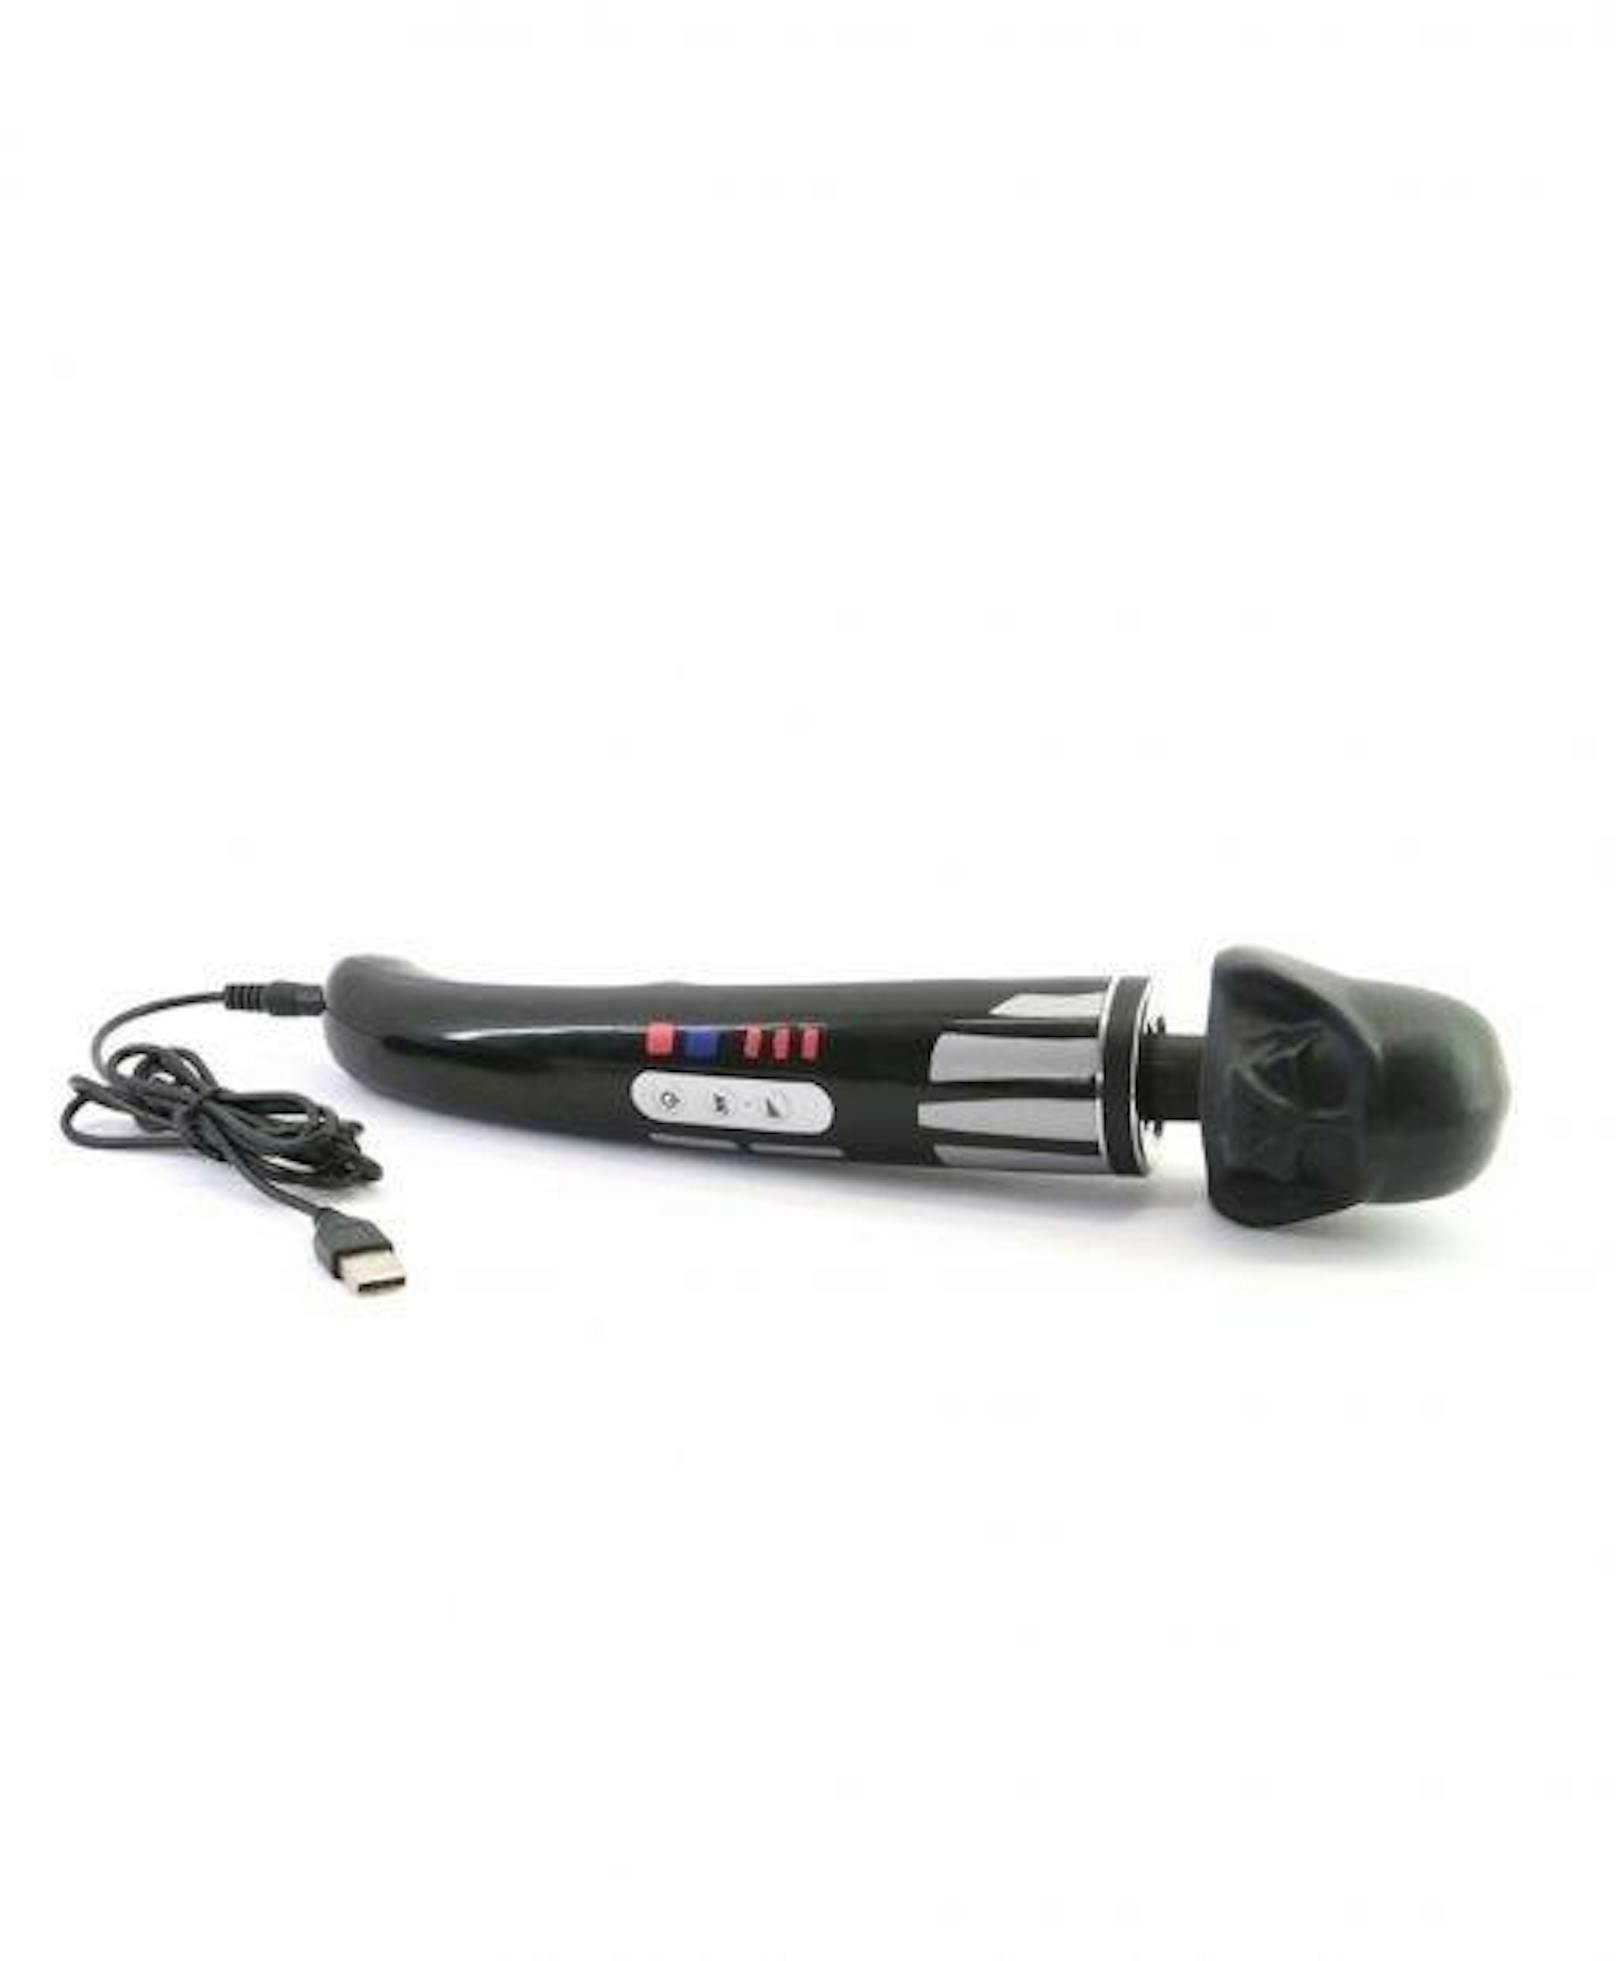 Der "Darth Vibrator" ist dem berühmten Sith-Lord nachempfunden und wird über USB-Kabel aufgeladen.